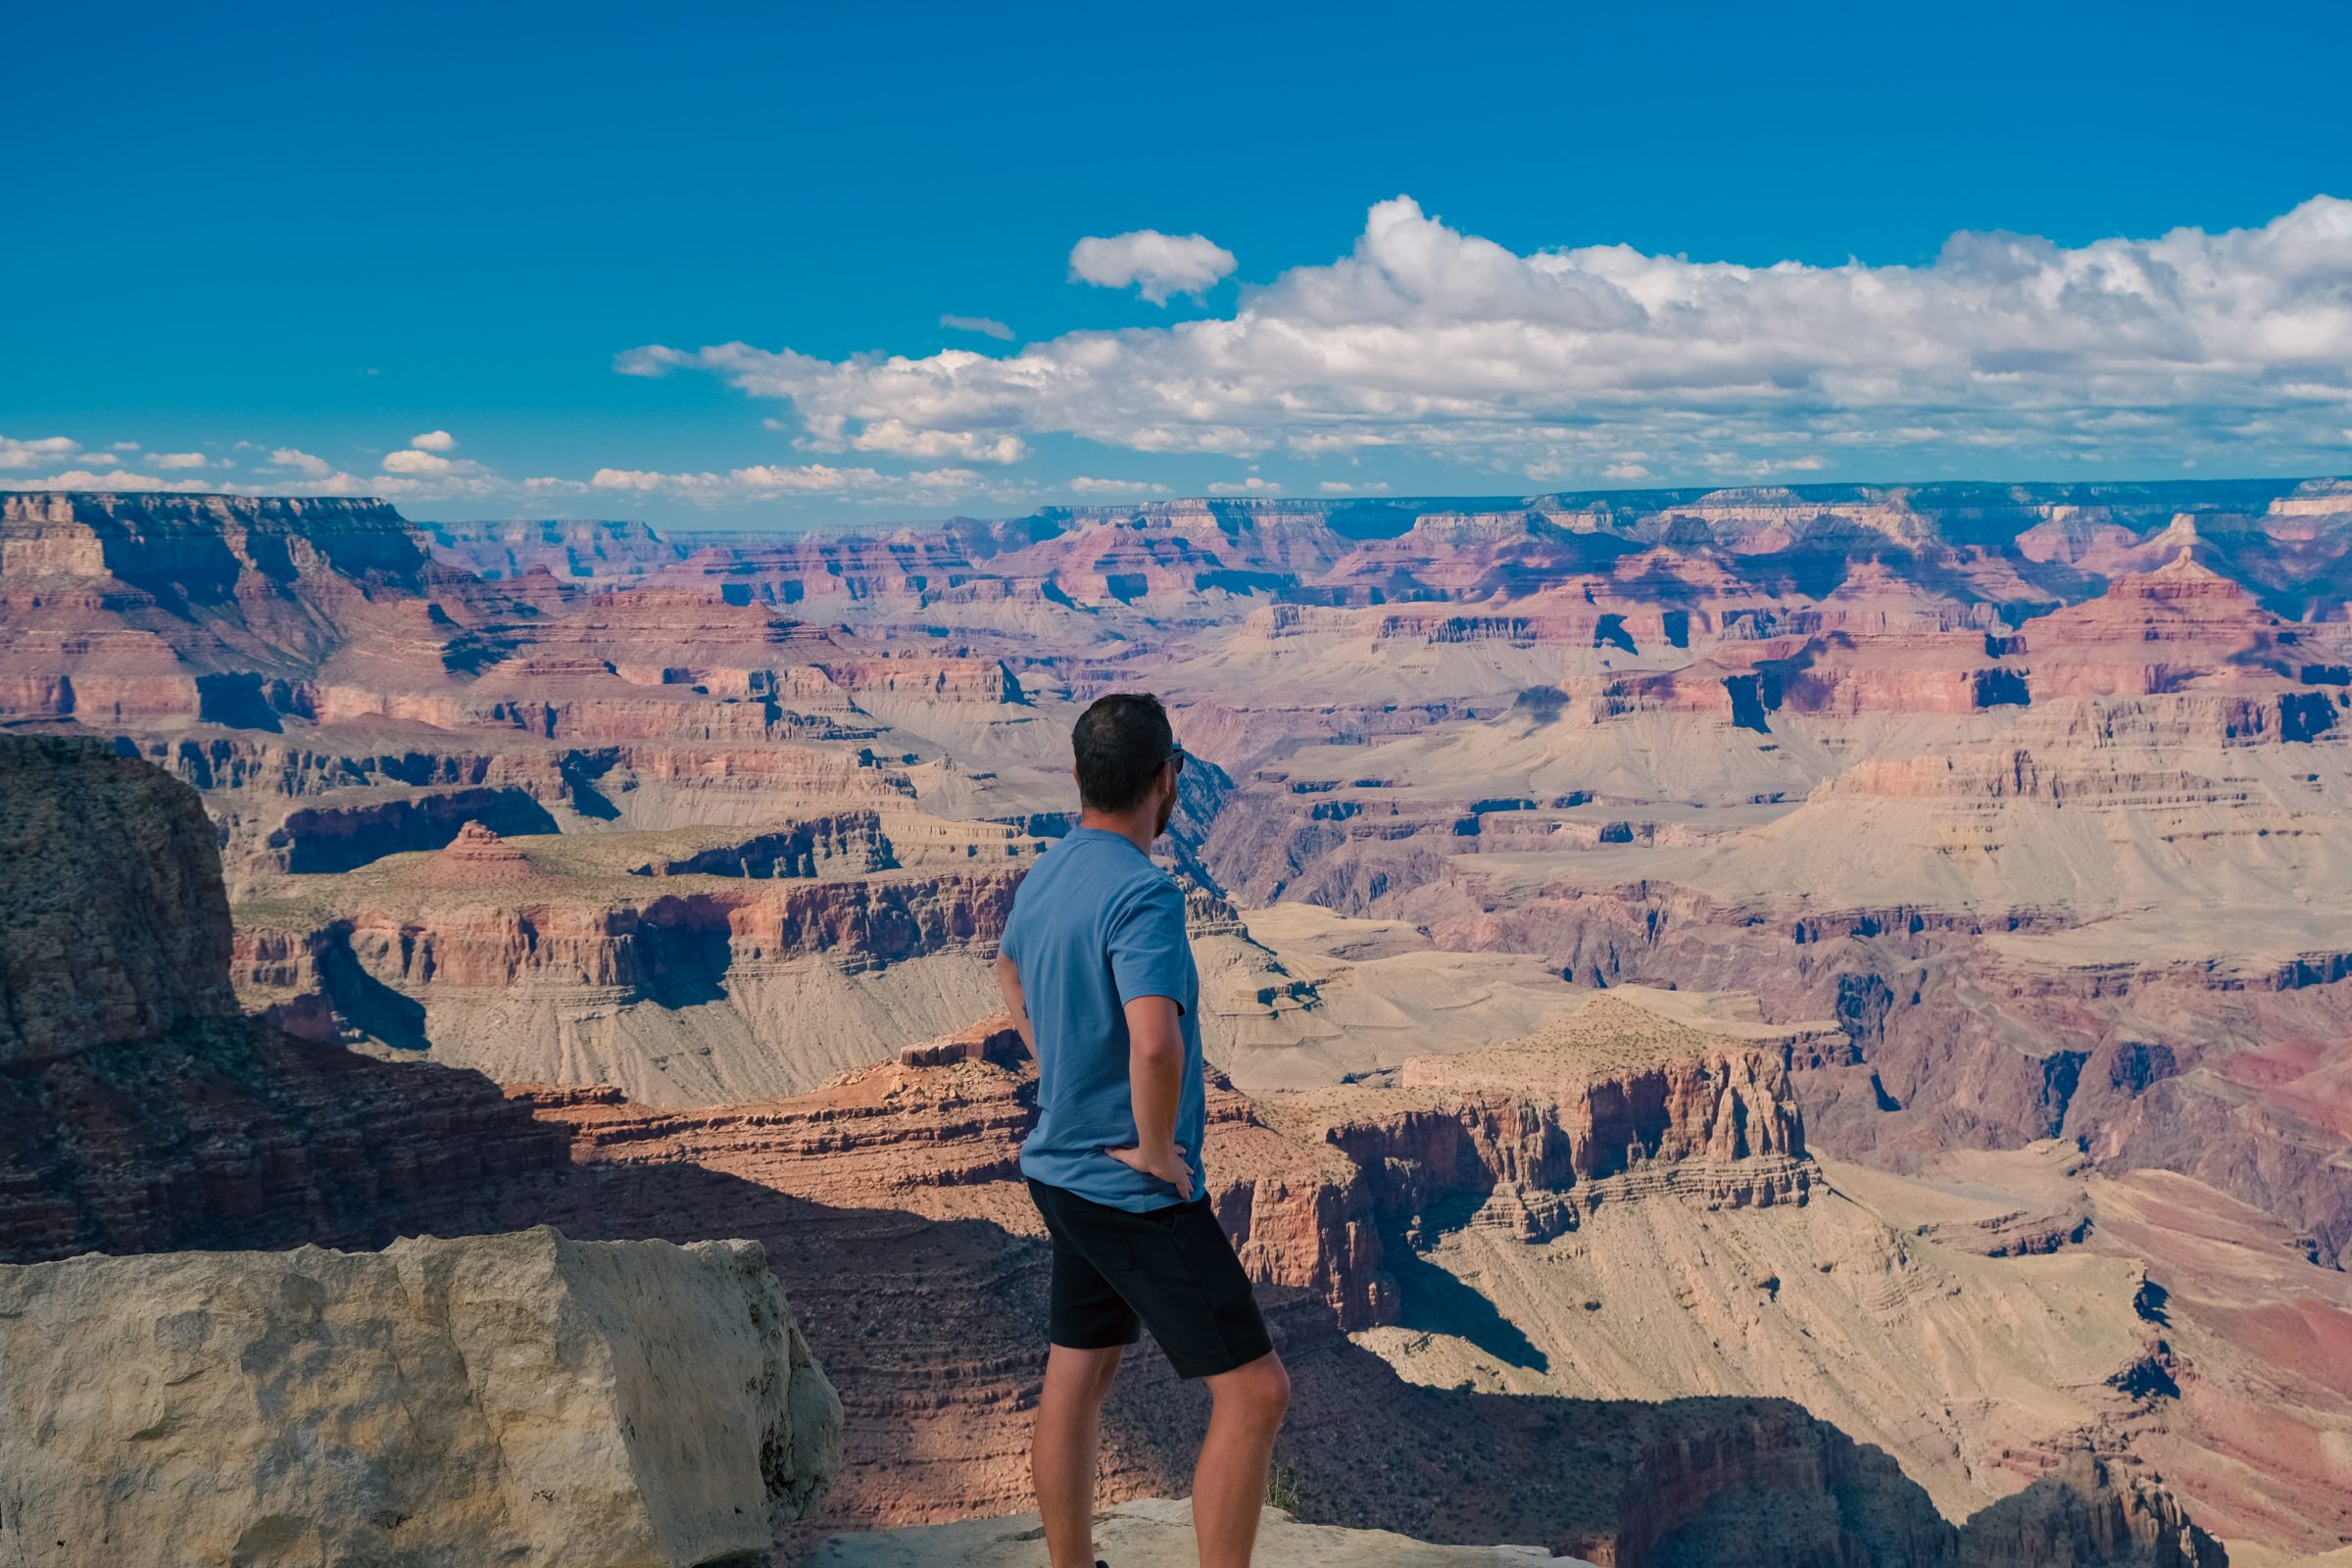 Chris at Grand Canyon National Park